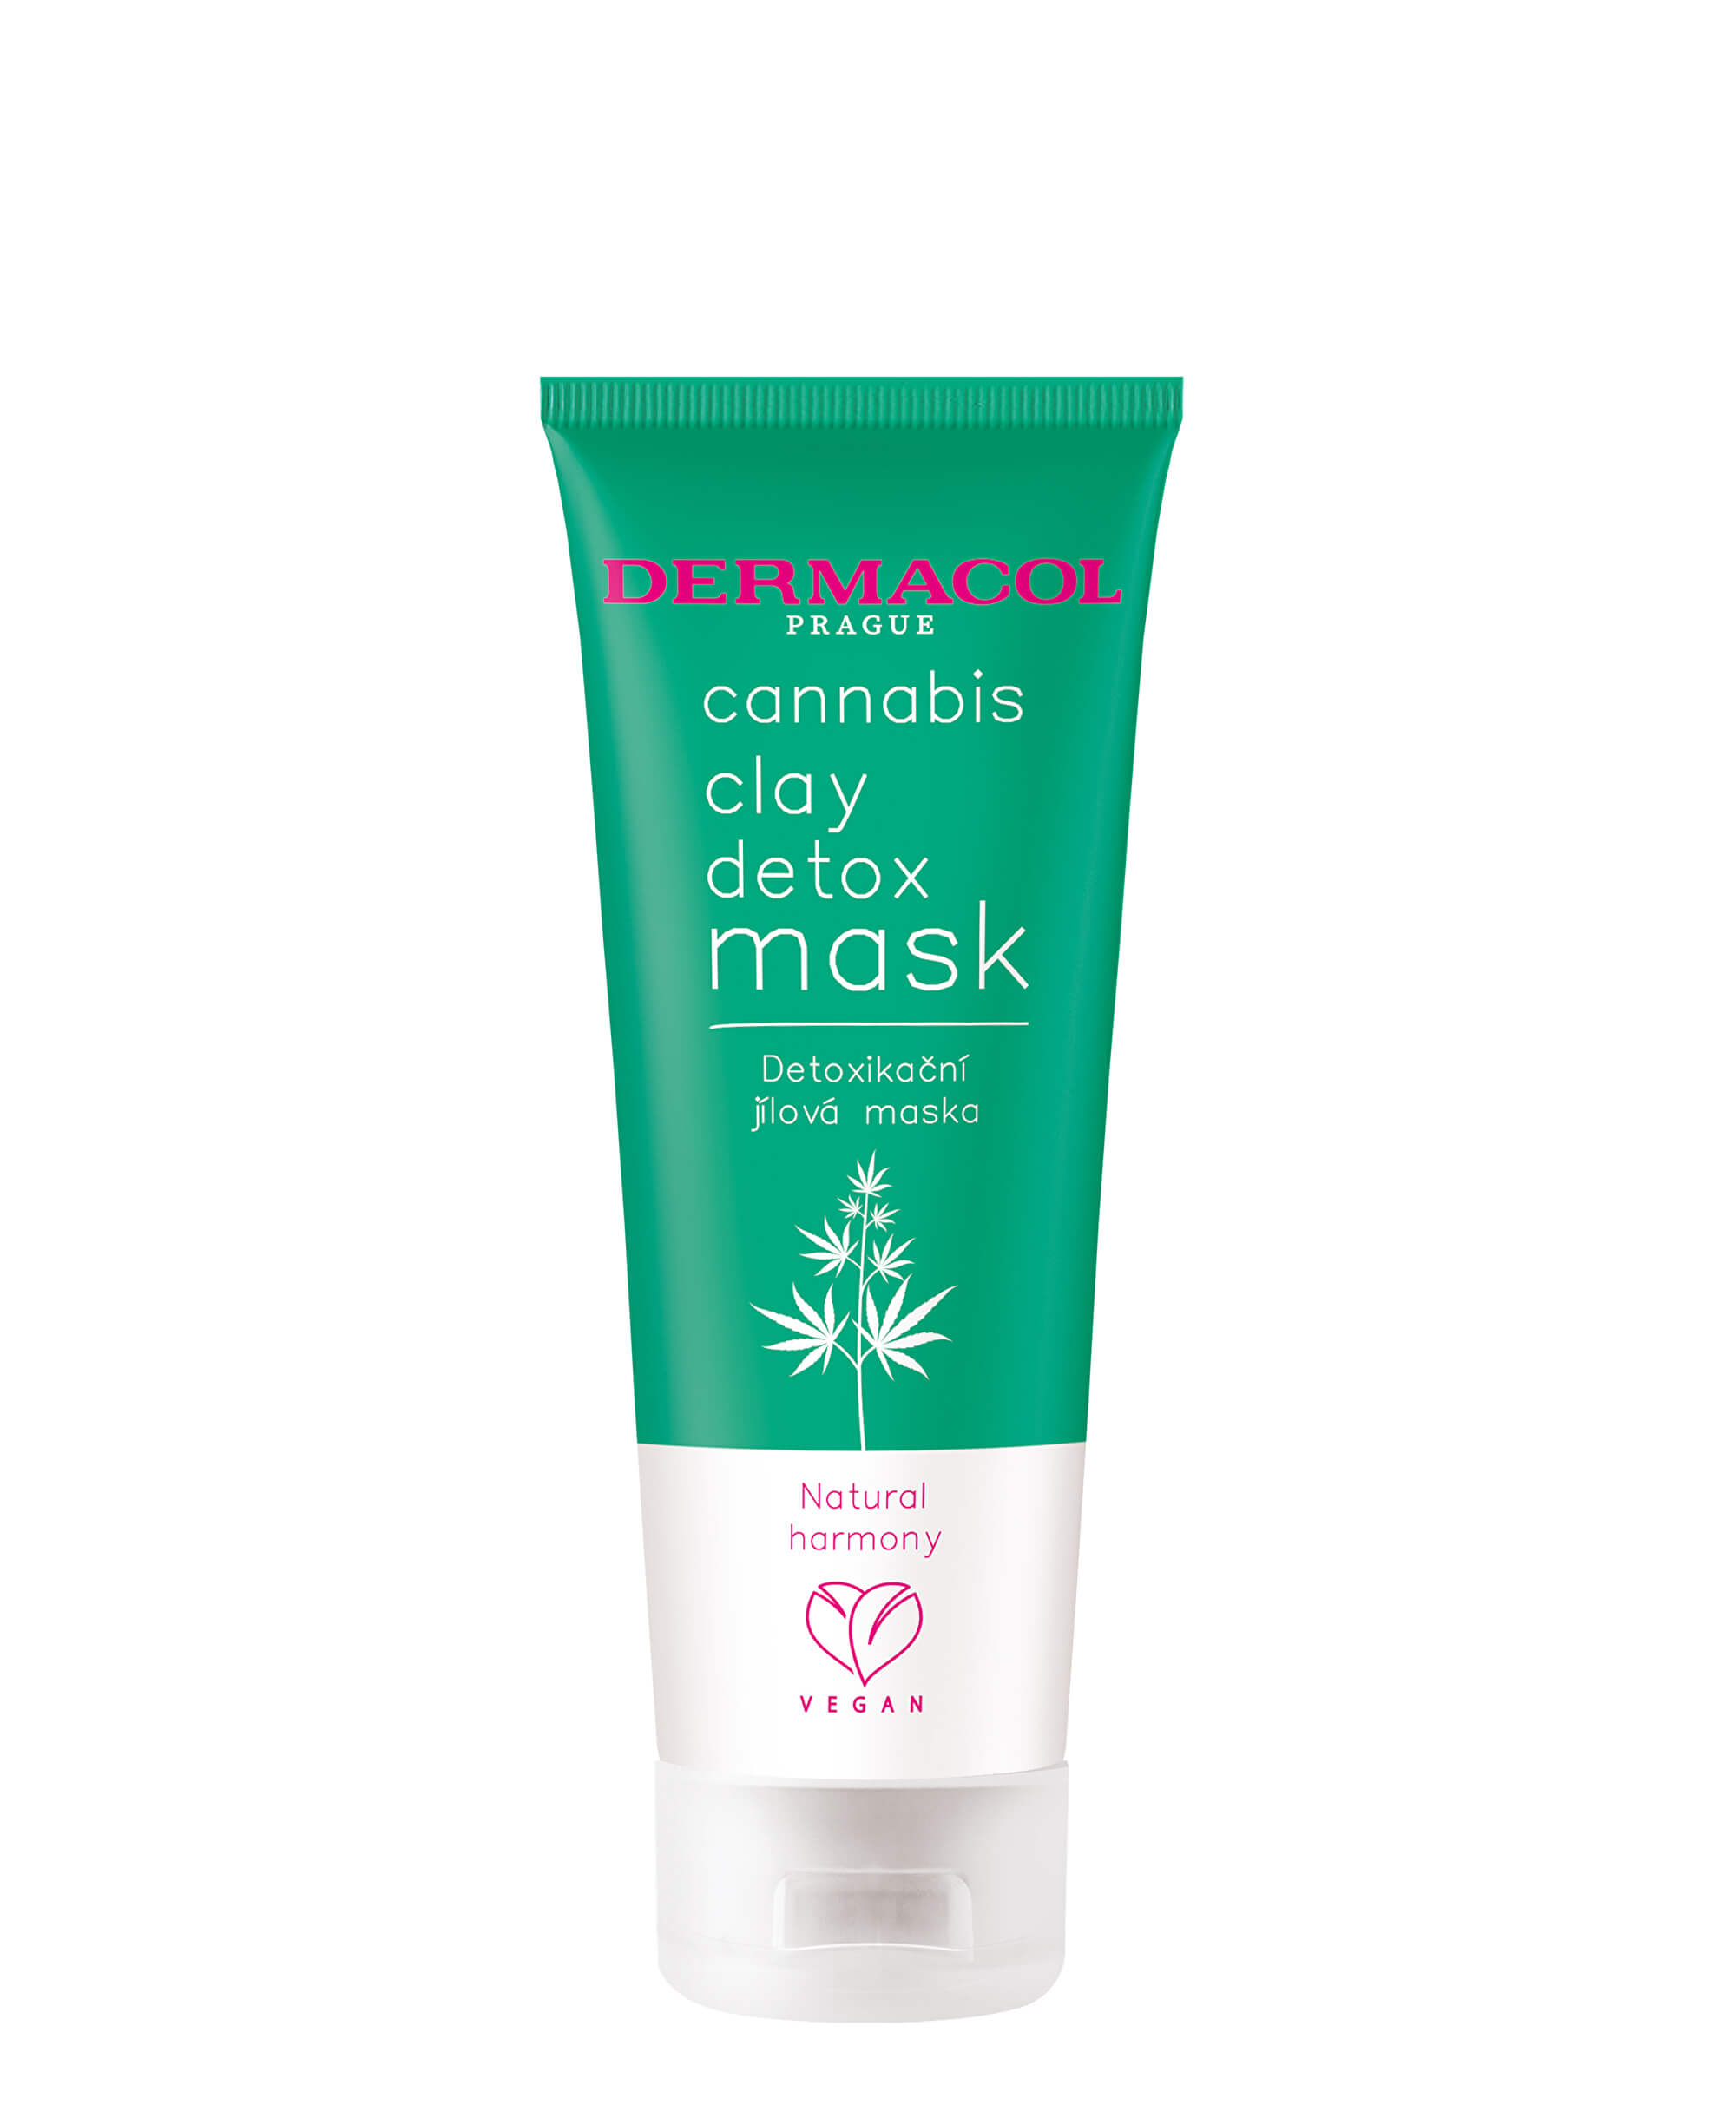 Dermacol Detoxikační jílová maska s konopným olejem Cannabis (Clay Detox Mask) 100 ml